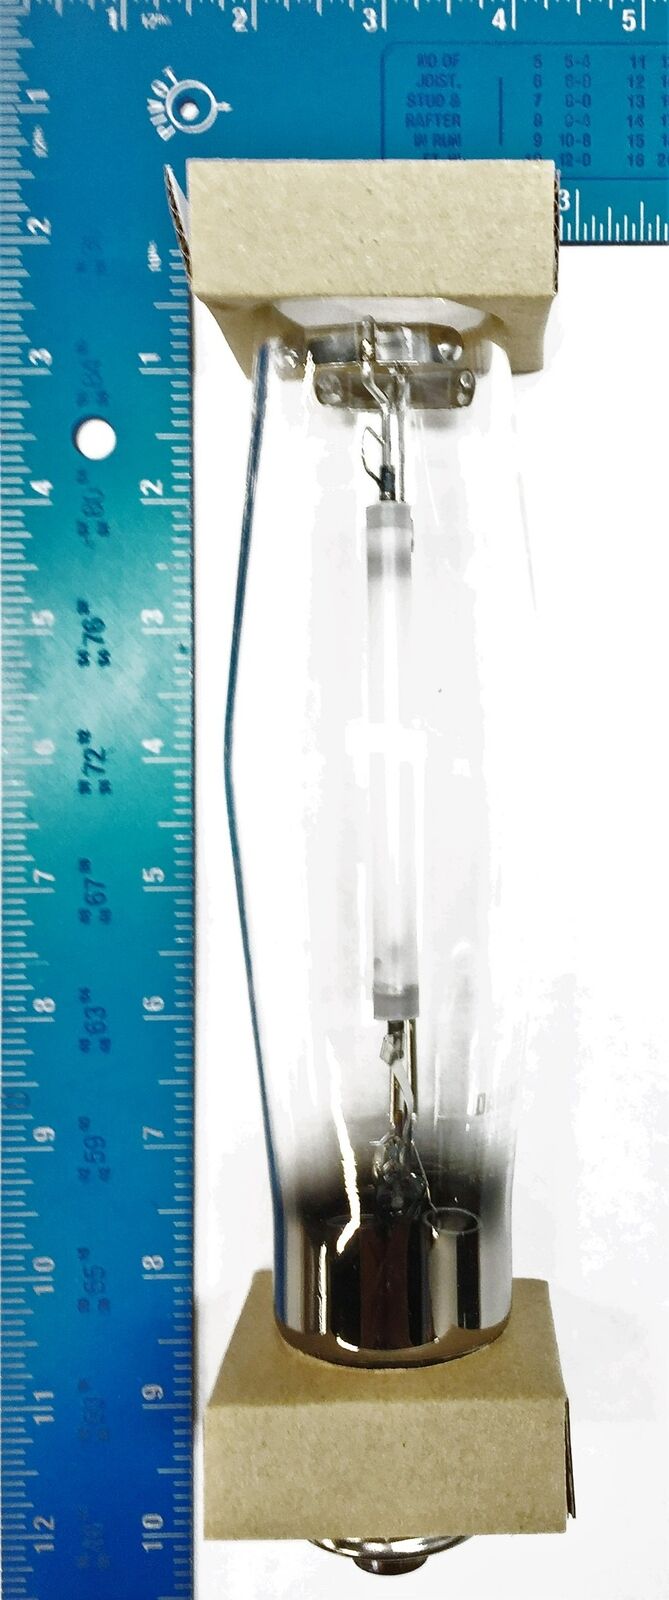 Damar/Damalux High Pressure Clear Sodium Bulb LU250 [Lot of 12] NOS Damar LU250 - фотография #2